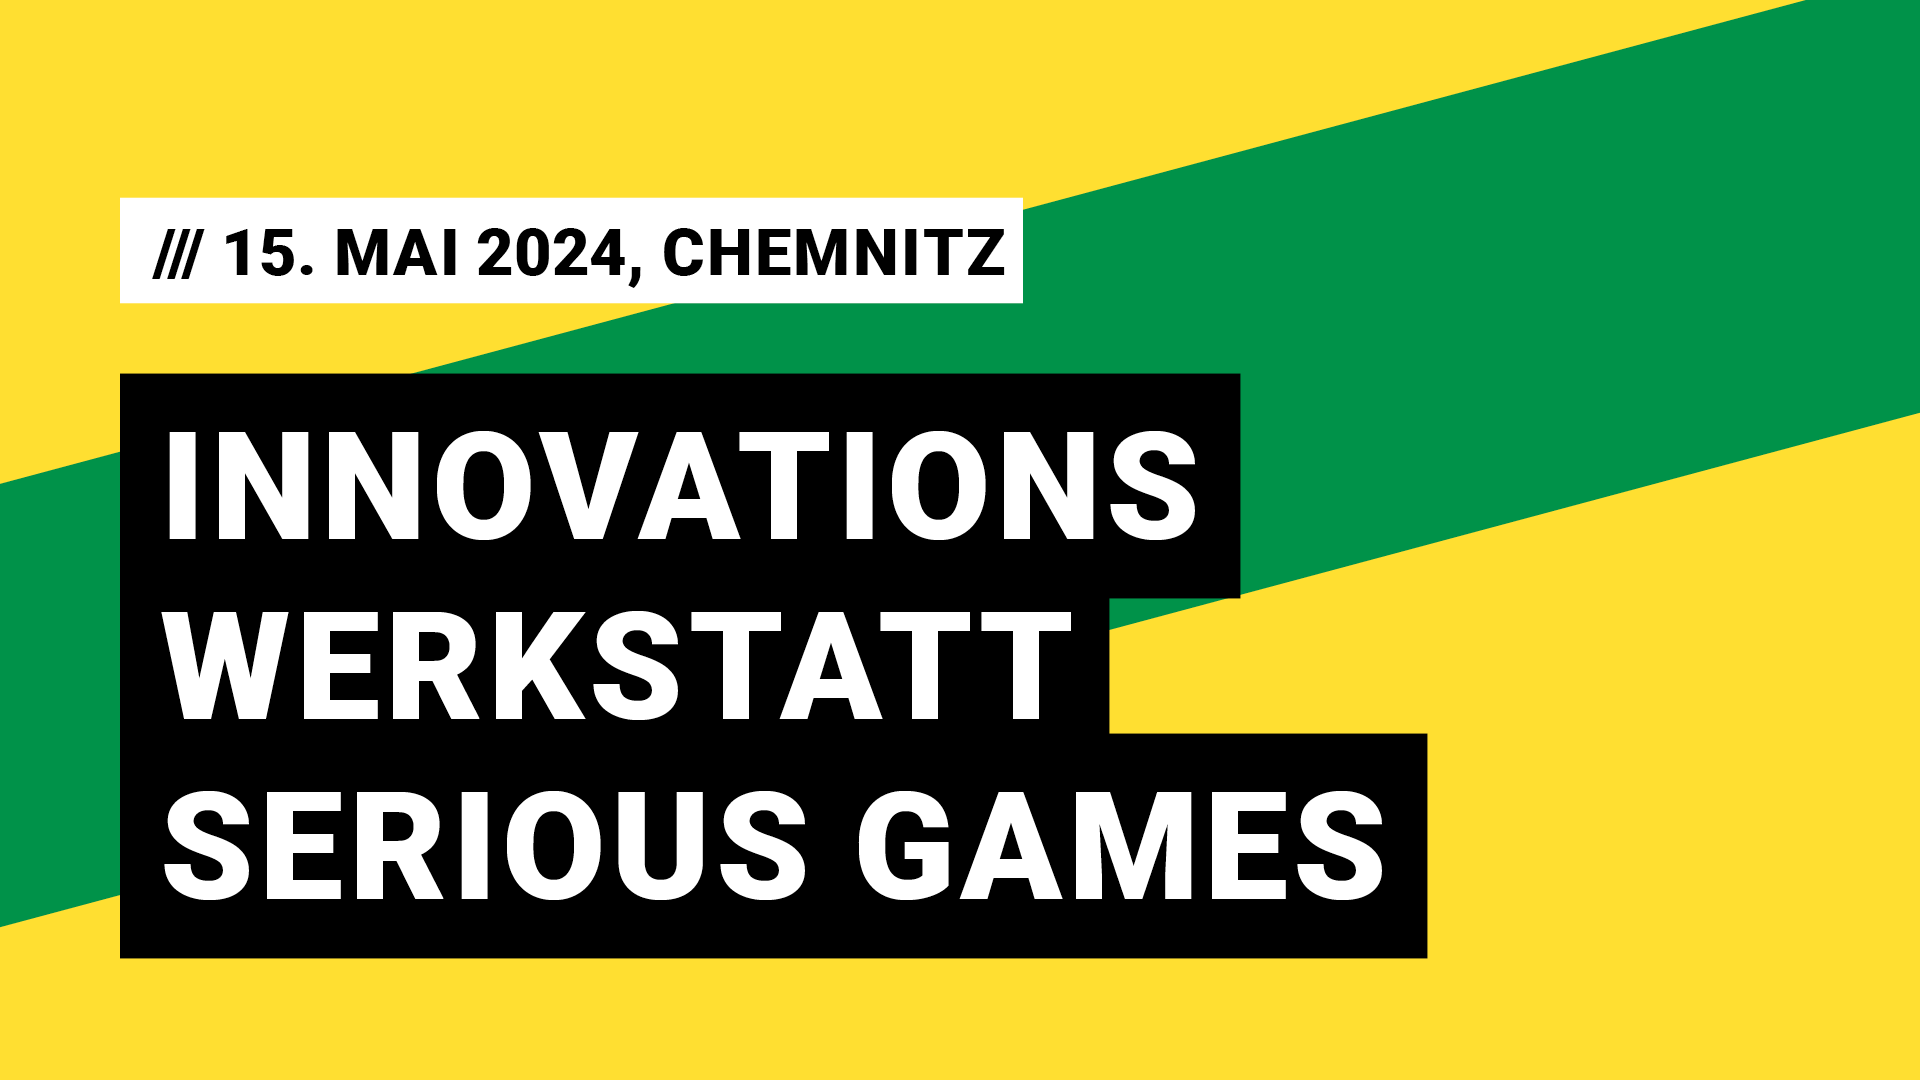 Titelbild Veranstaltung Innovationswerkstatt Serious Games mit Datum 15. Mai 2024, Chemnitz